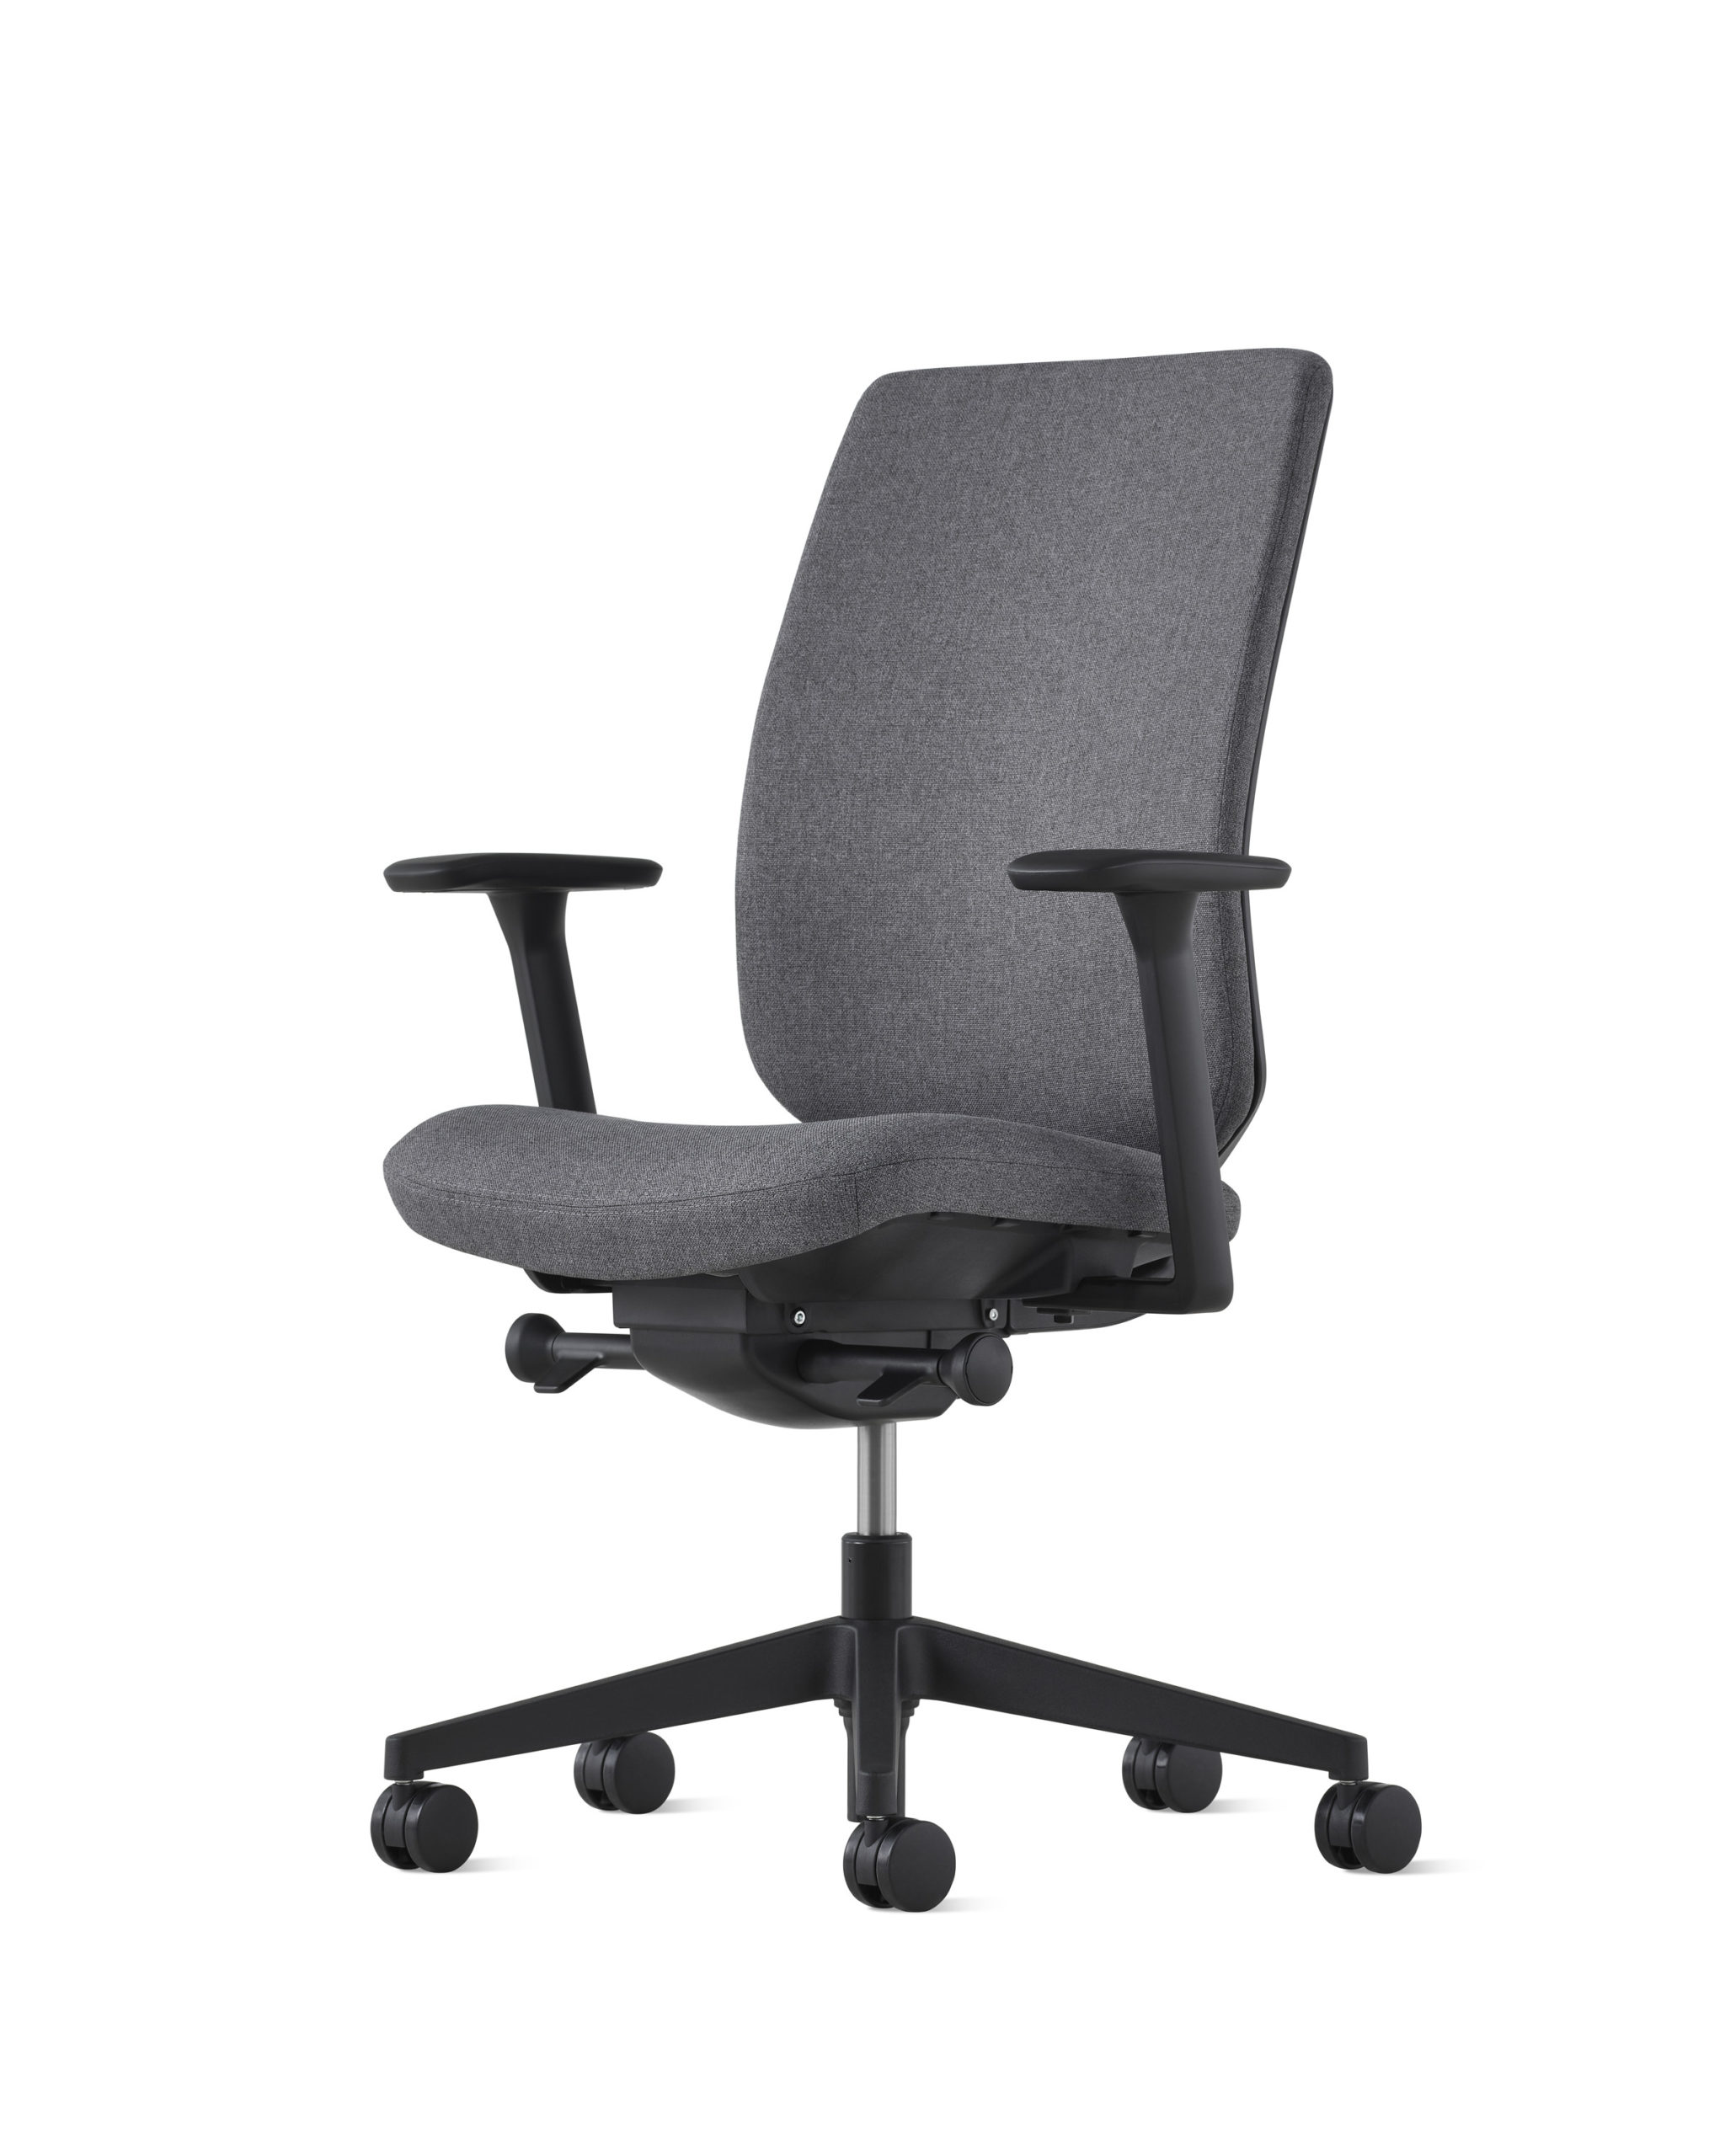 Verus Herman Miller silla ergonomica gris oscura tapizada